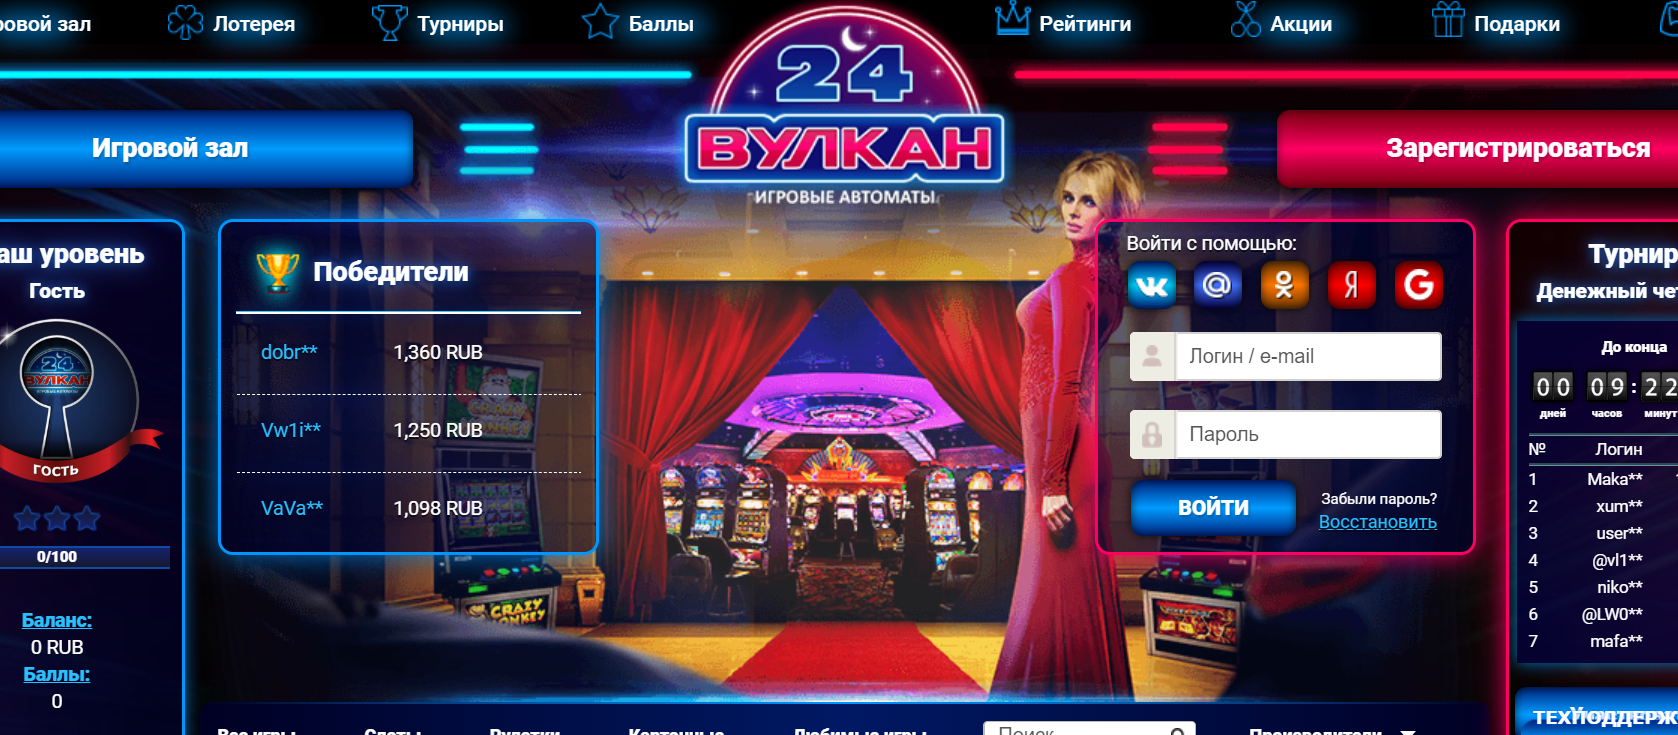 Наслаждение азартом на сайте казино Вулкан 24